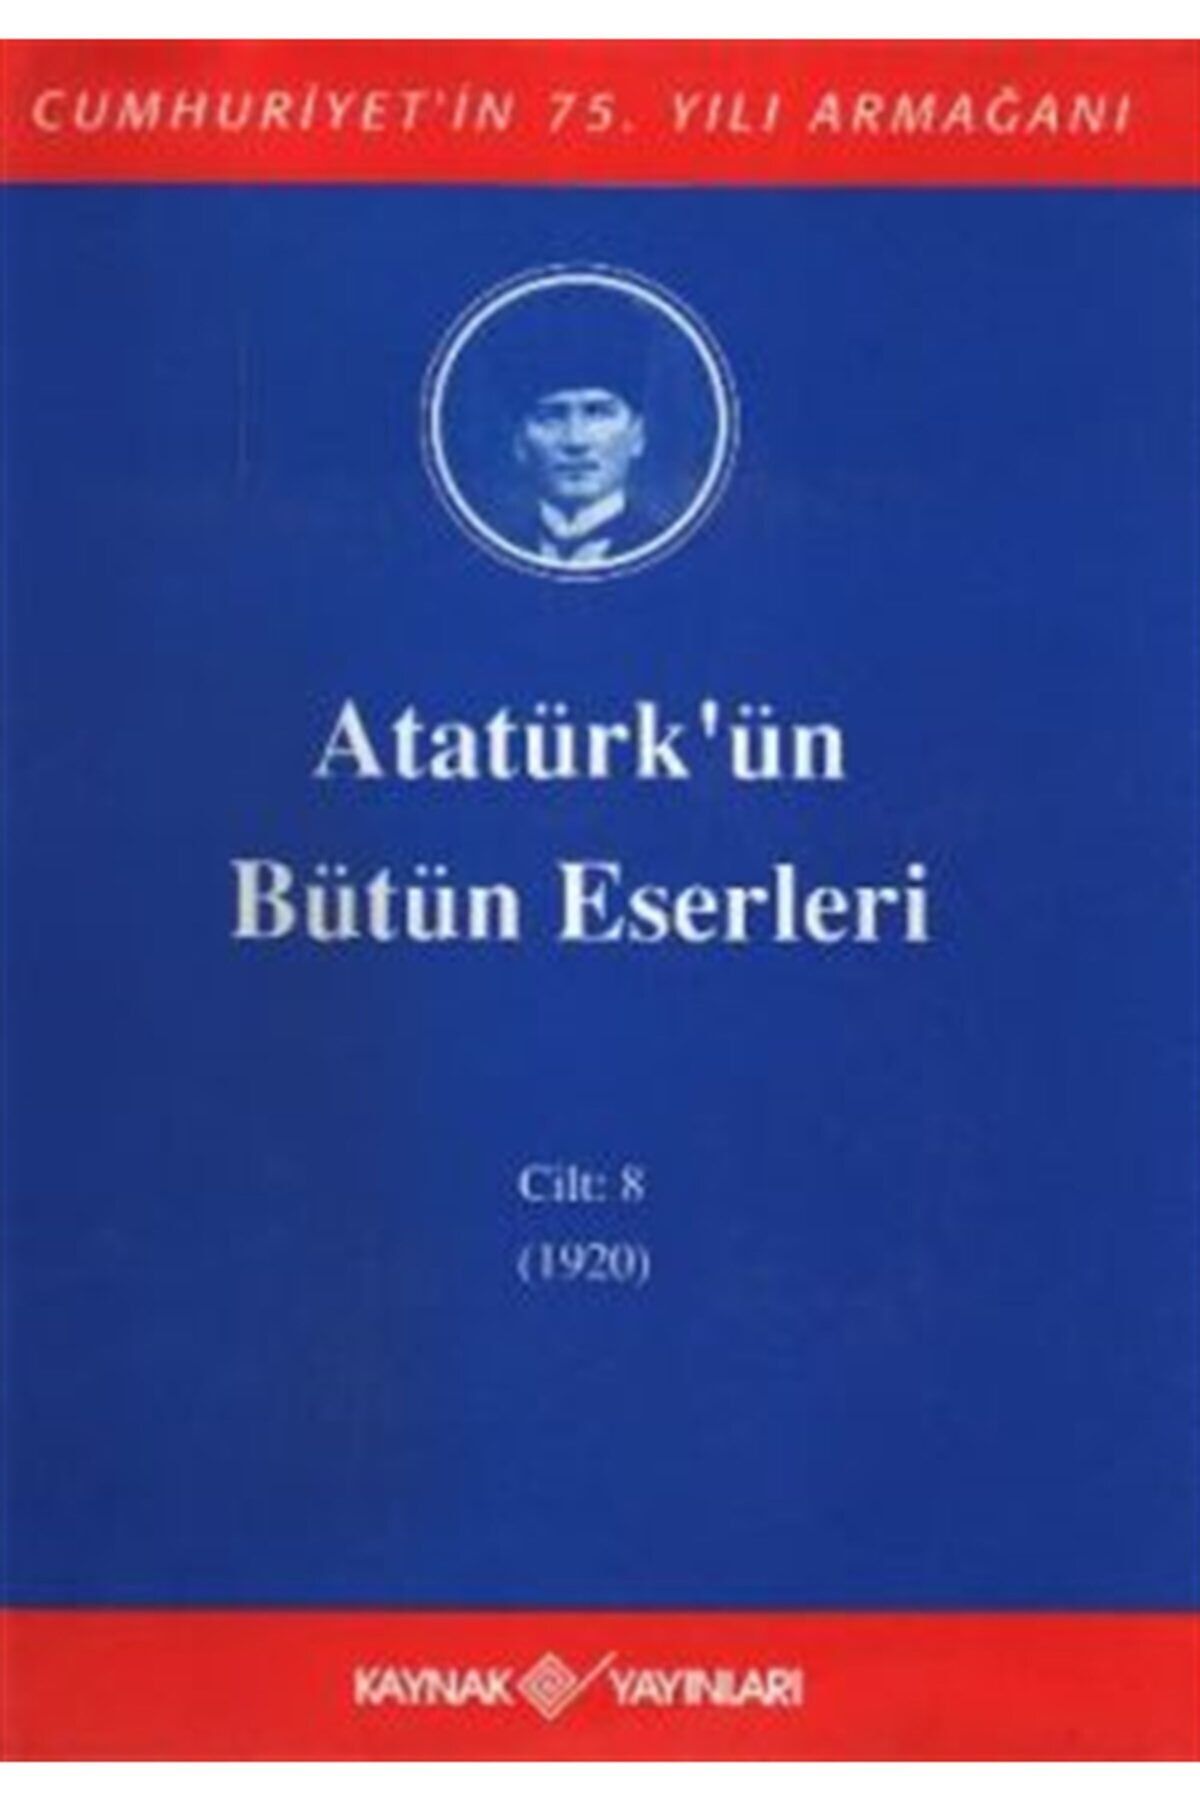 Can Yayınları Atatürk'ün Bütün Eserleri Cilt: 8 (1920) - Mustafa Kemal Atatürk